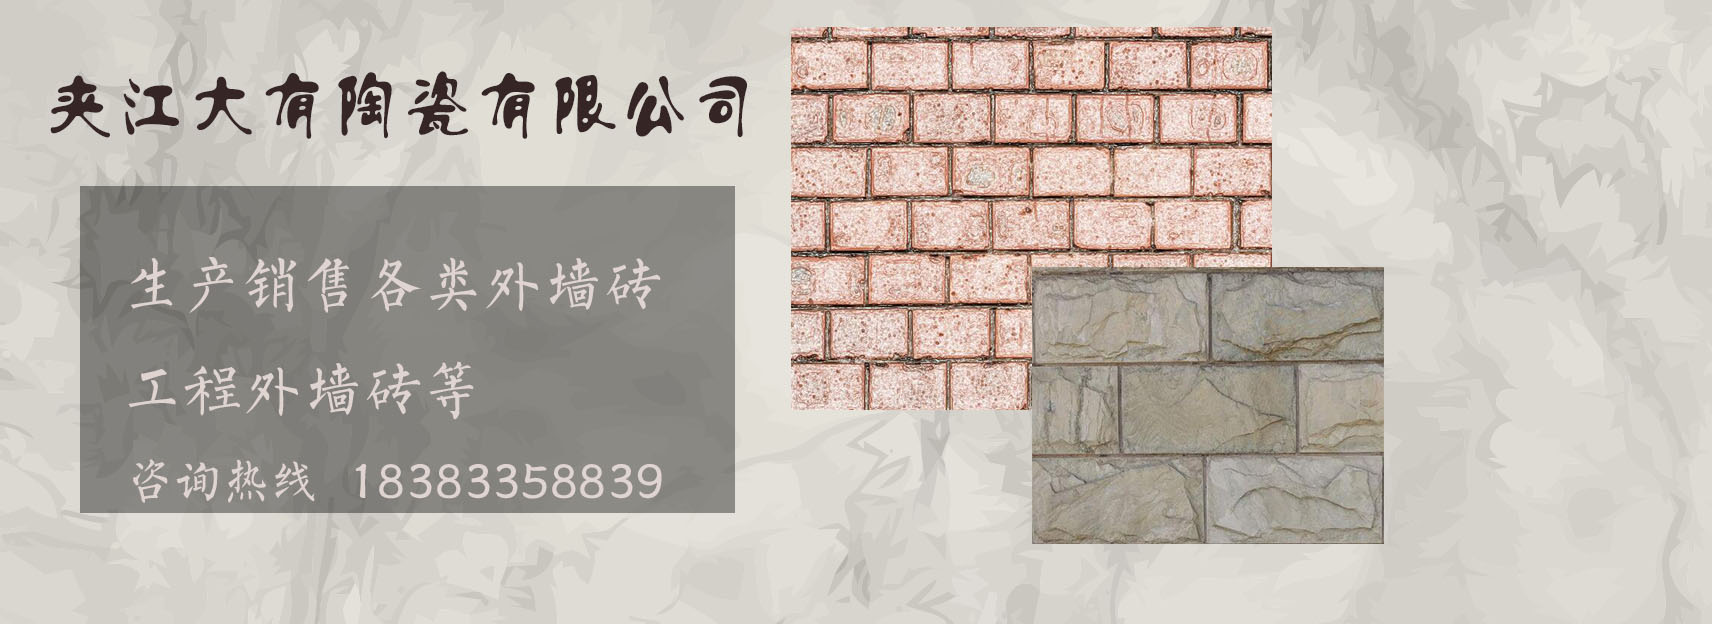 兰州夹江外墙砖厂家购买富海360关键词seo软件一套